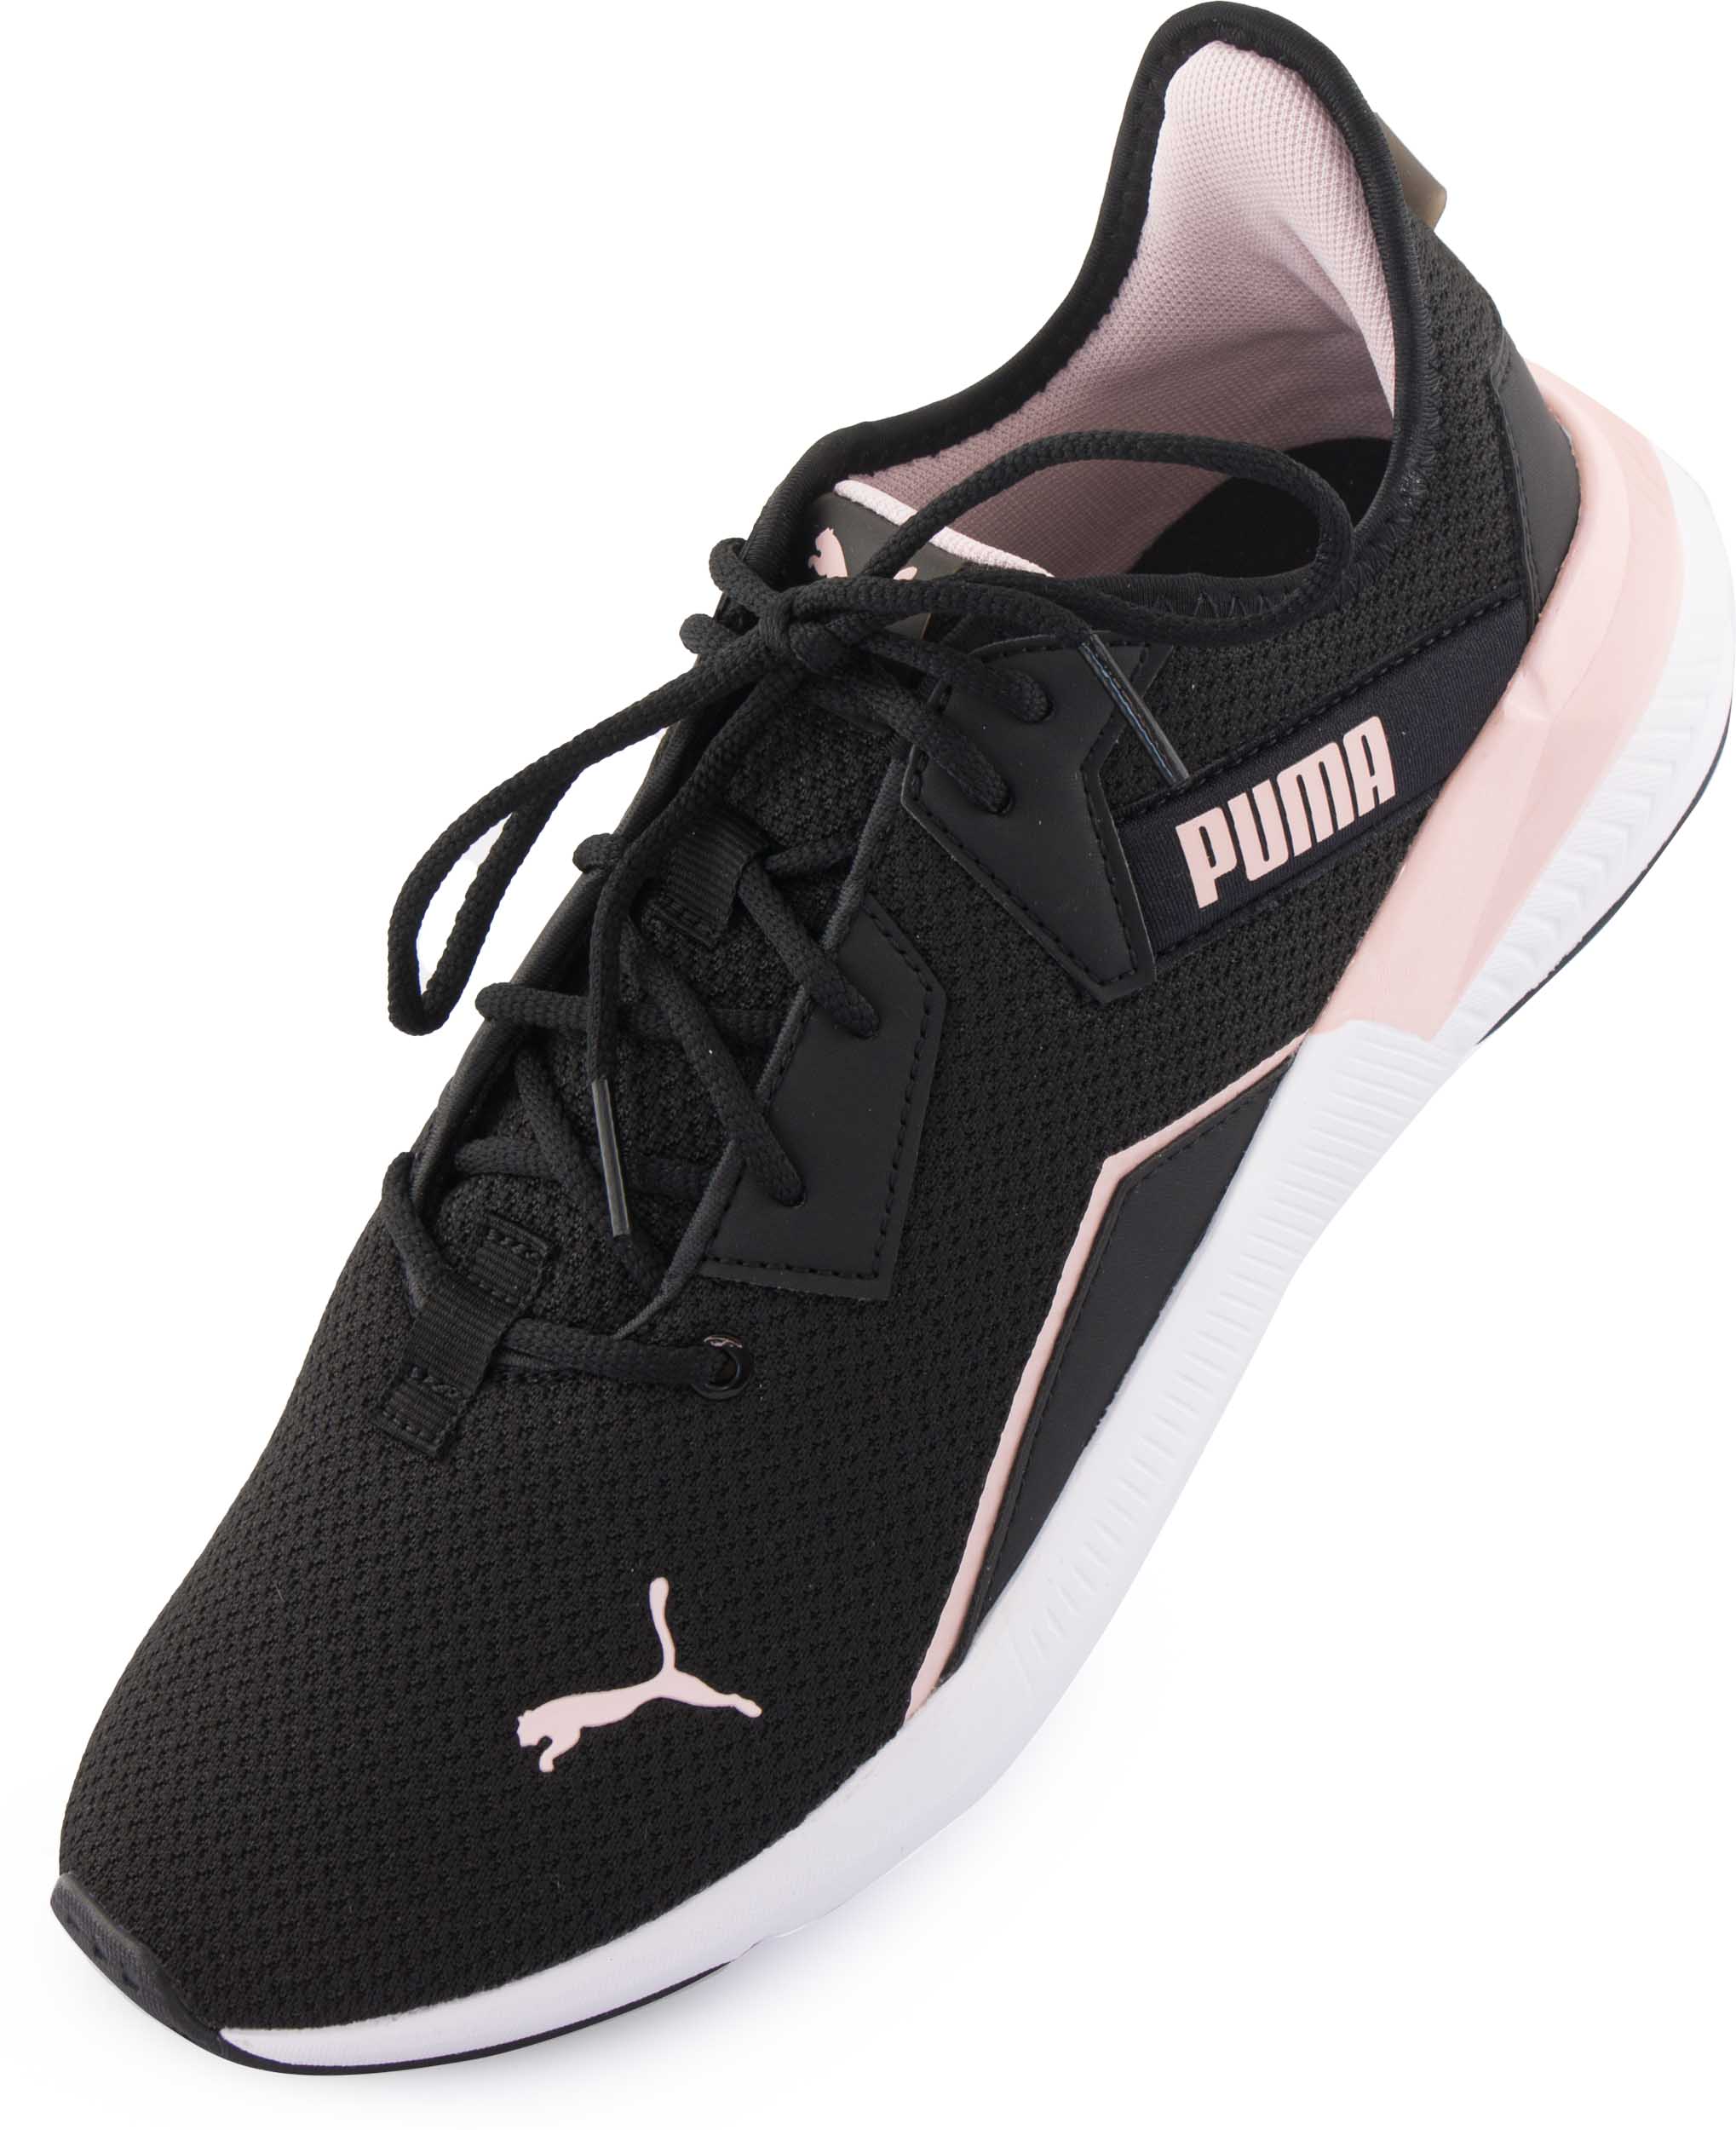 Dámské sportovní boty Puma Wms Platinum Shimmer Black Lotus|42